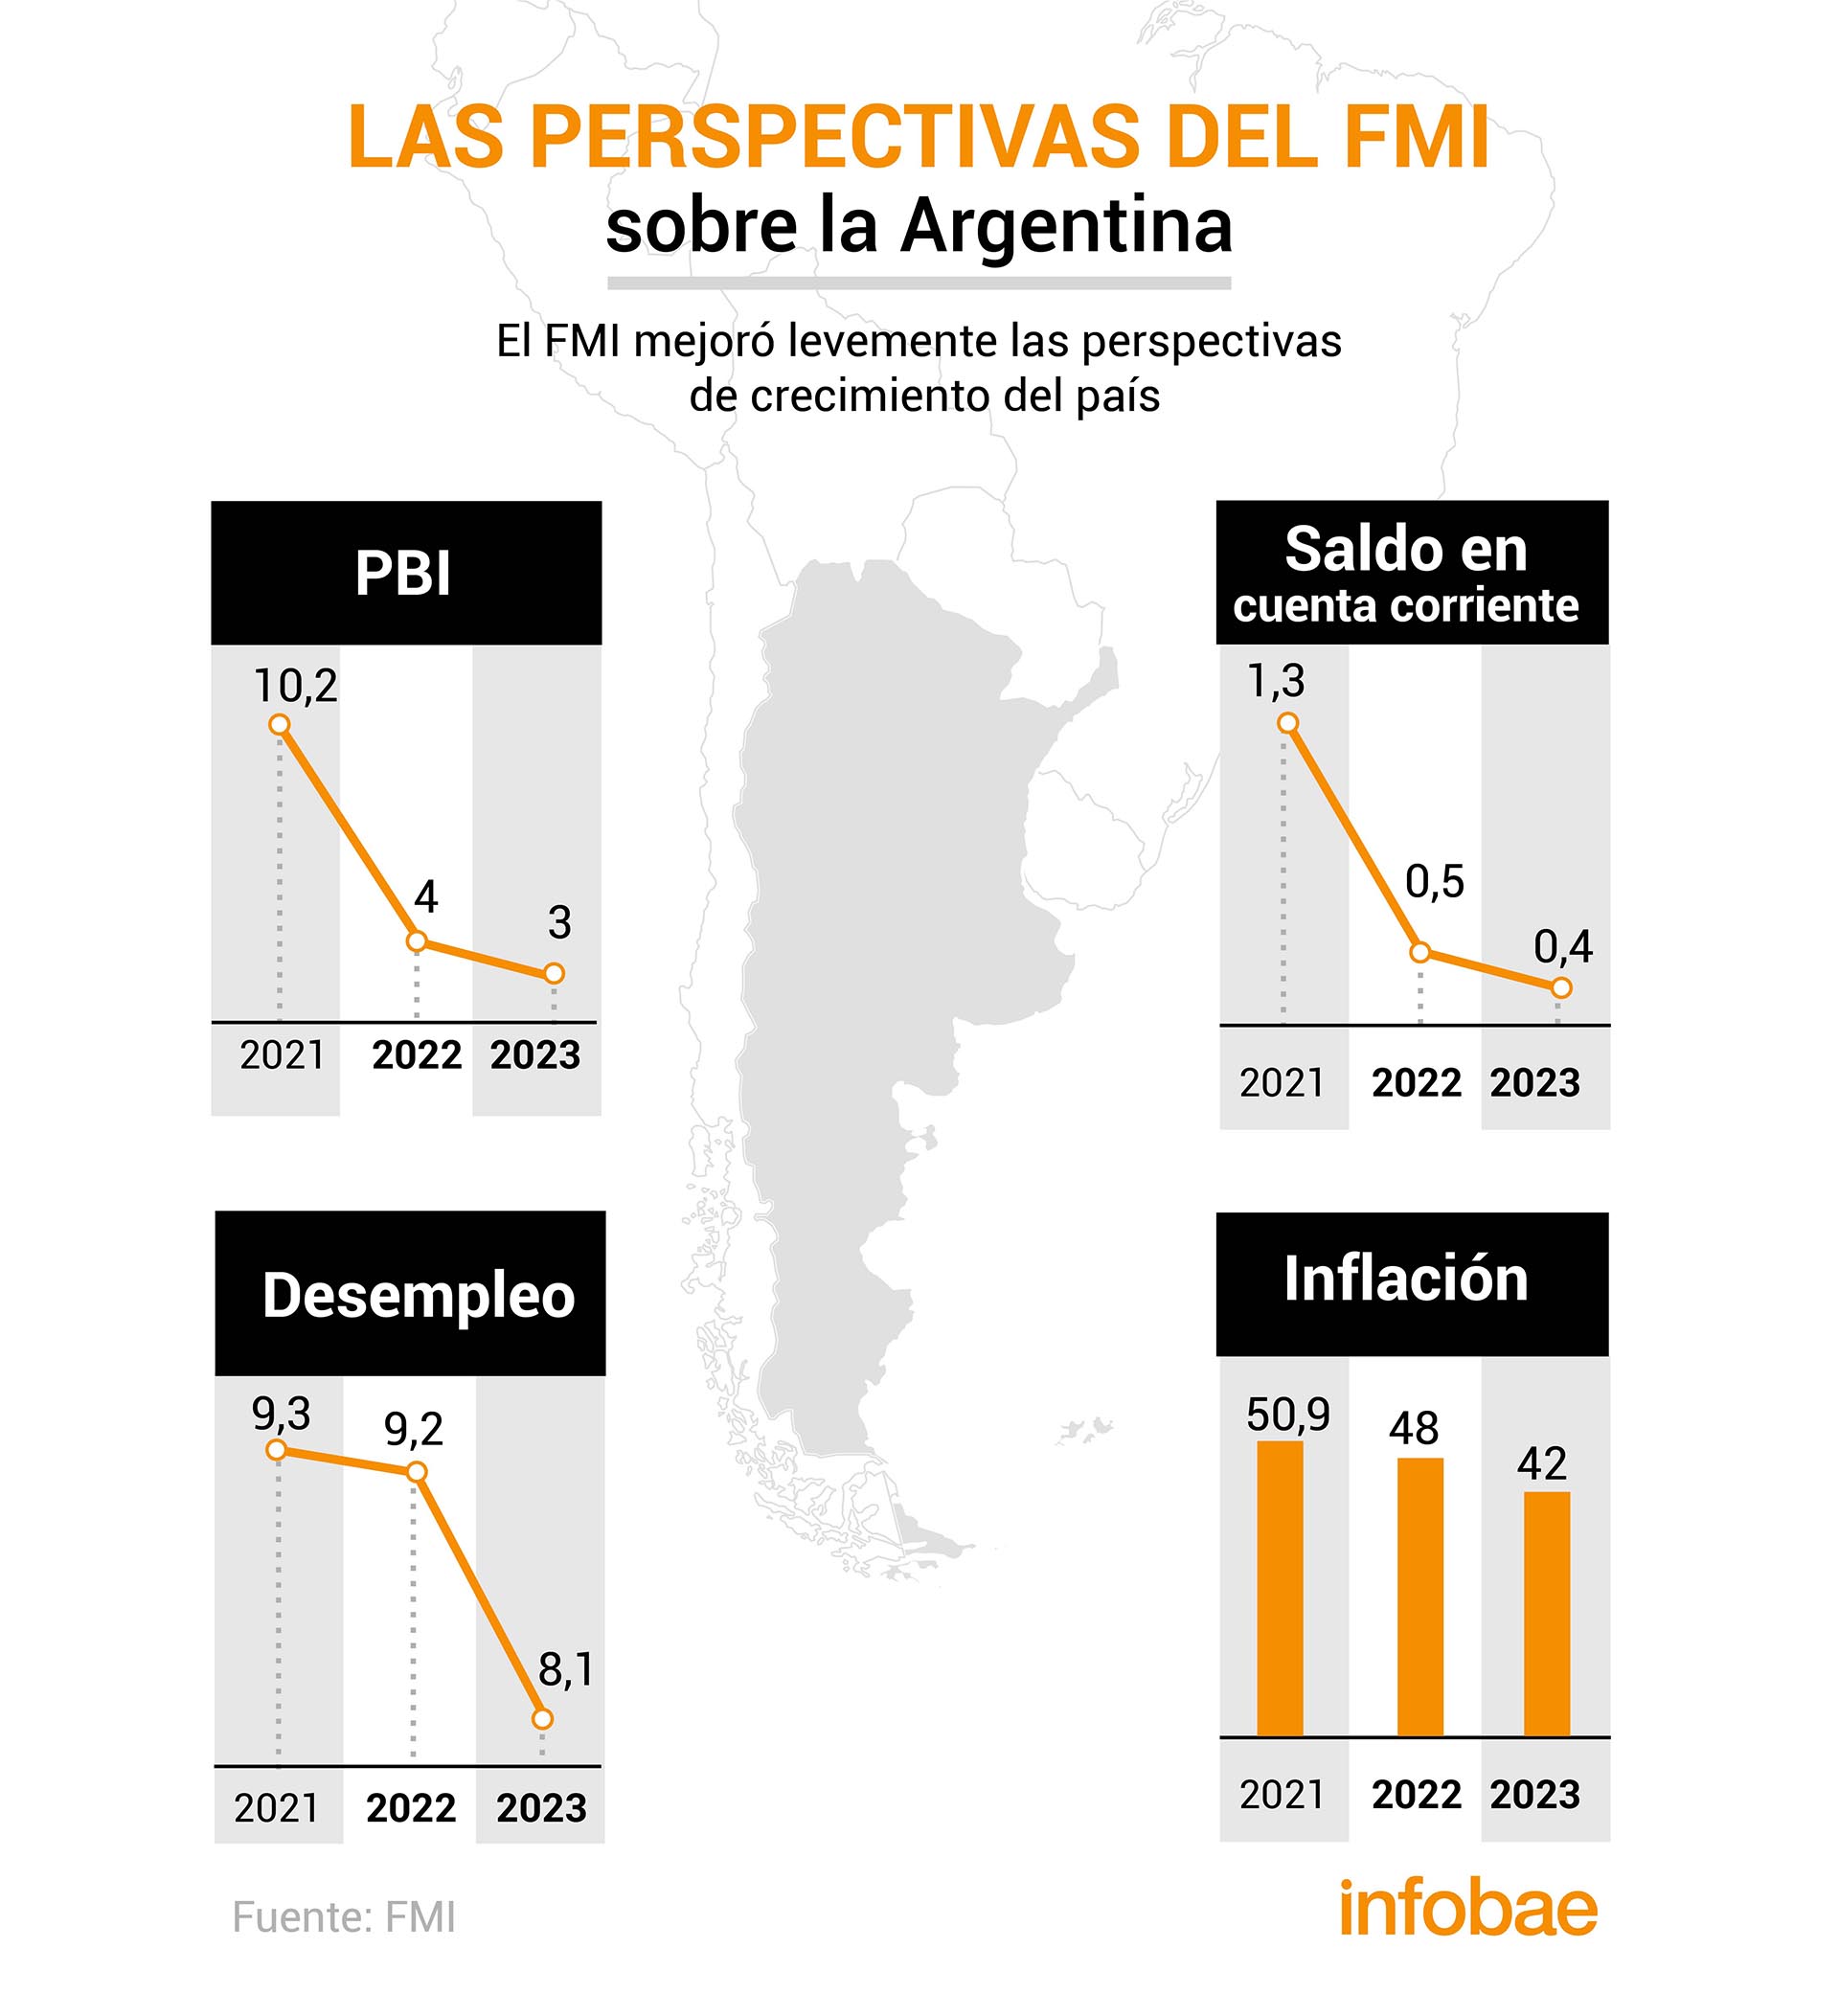 Las proyecciones del FMI en el WEO
Infografía de Marcelo Regalado